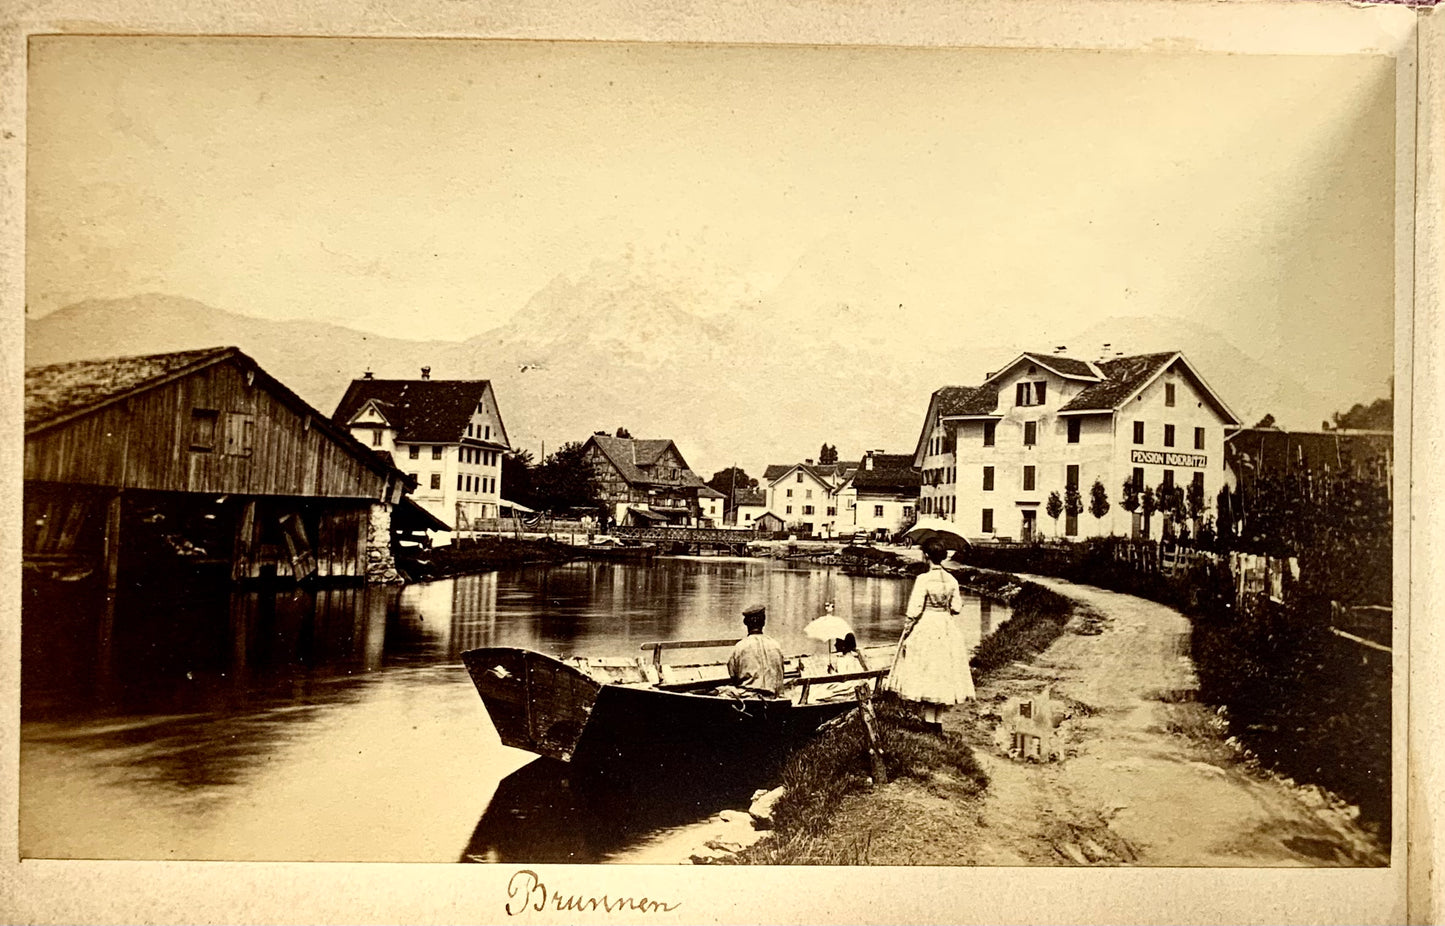 1860 Lago dei Quattro Cantoni, album souvenir, 10 primissime foto all'albumina, Svizzera 